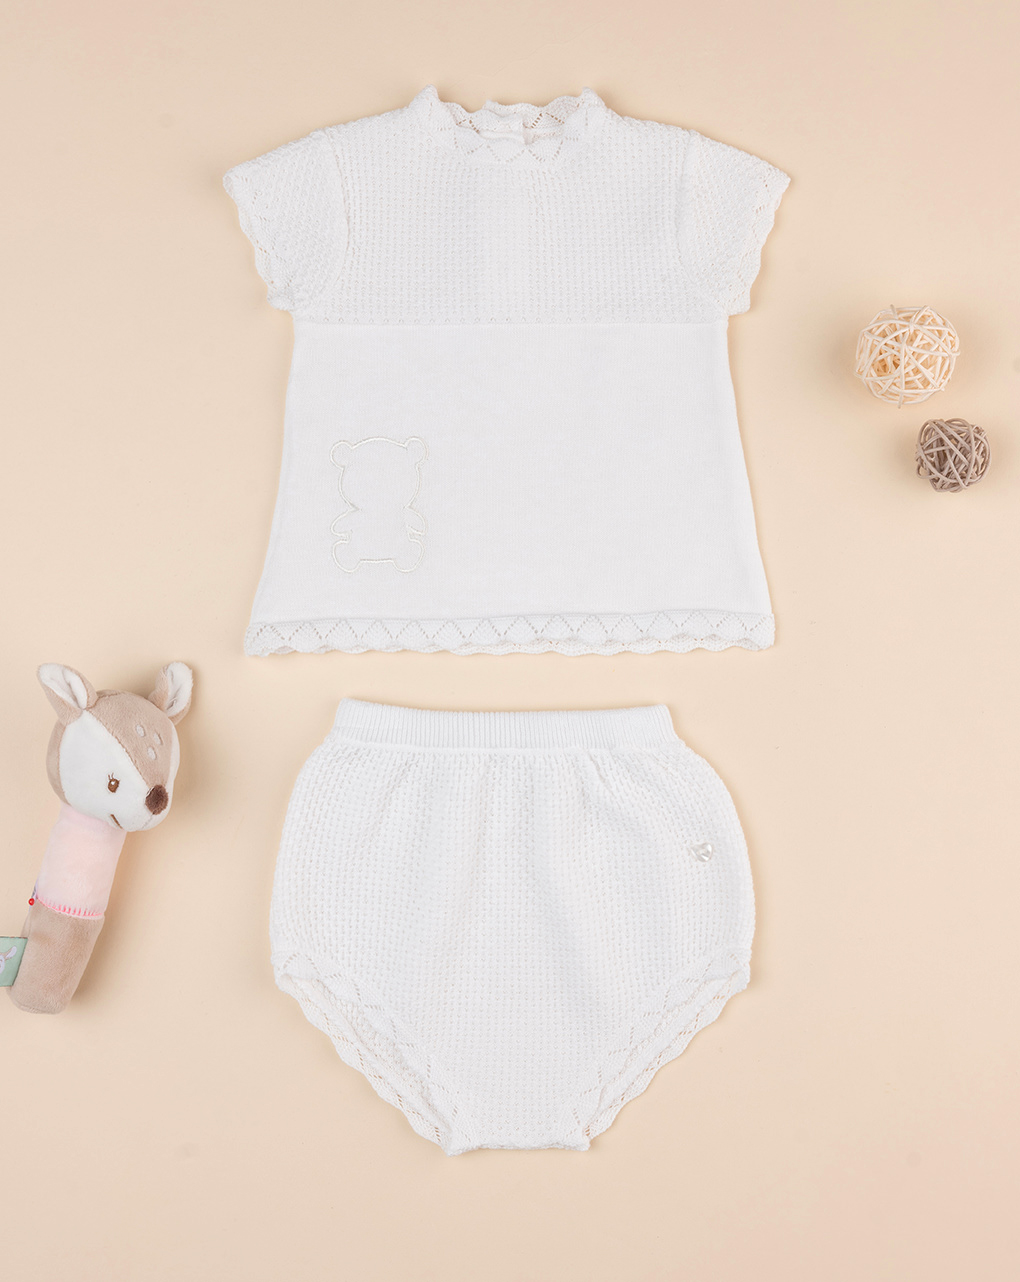 Completo neonata tricot bianco